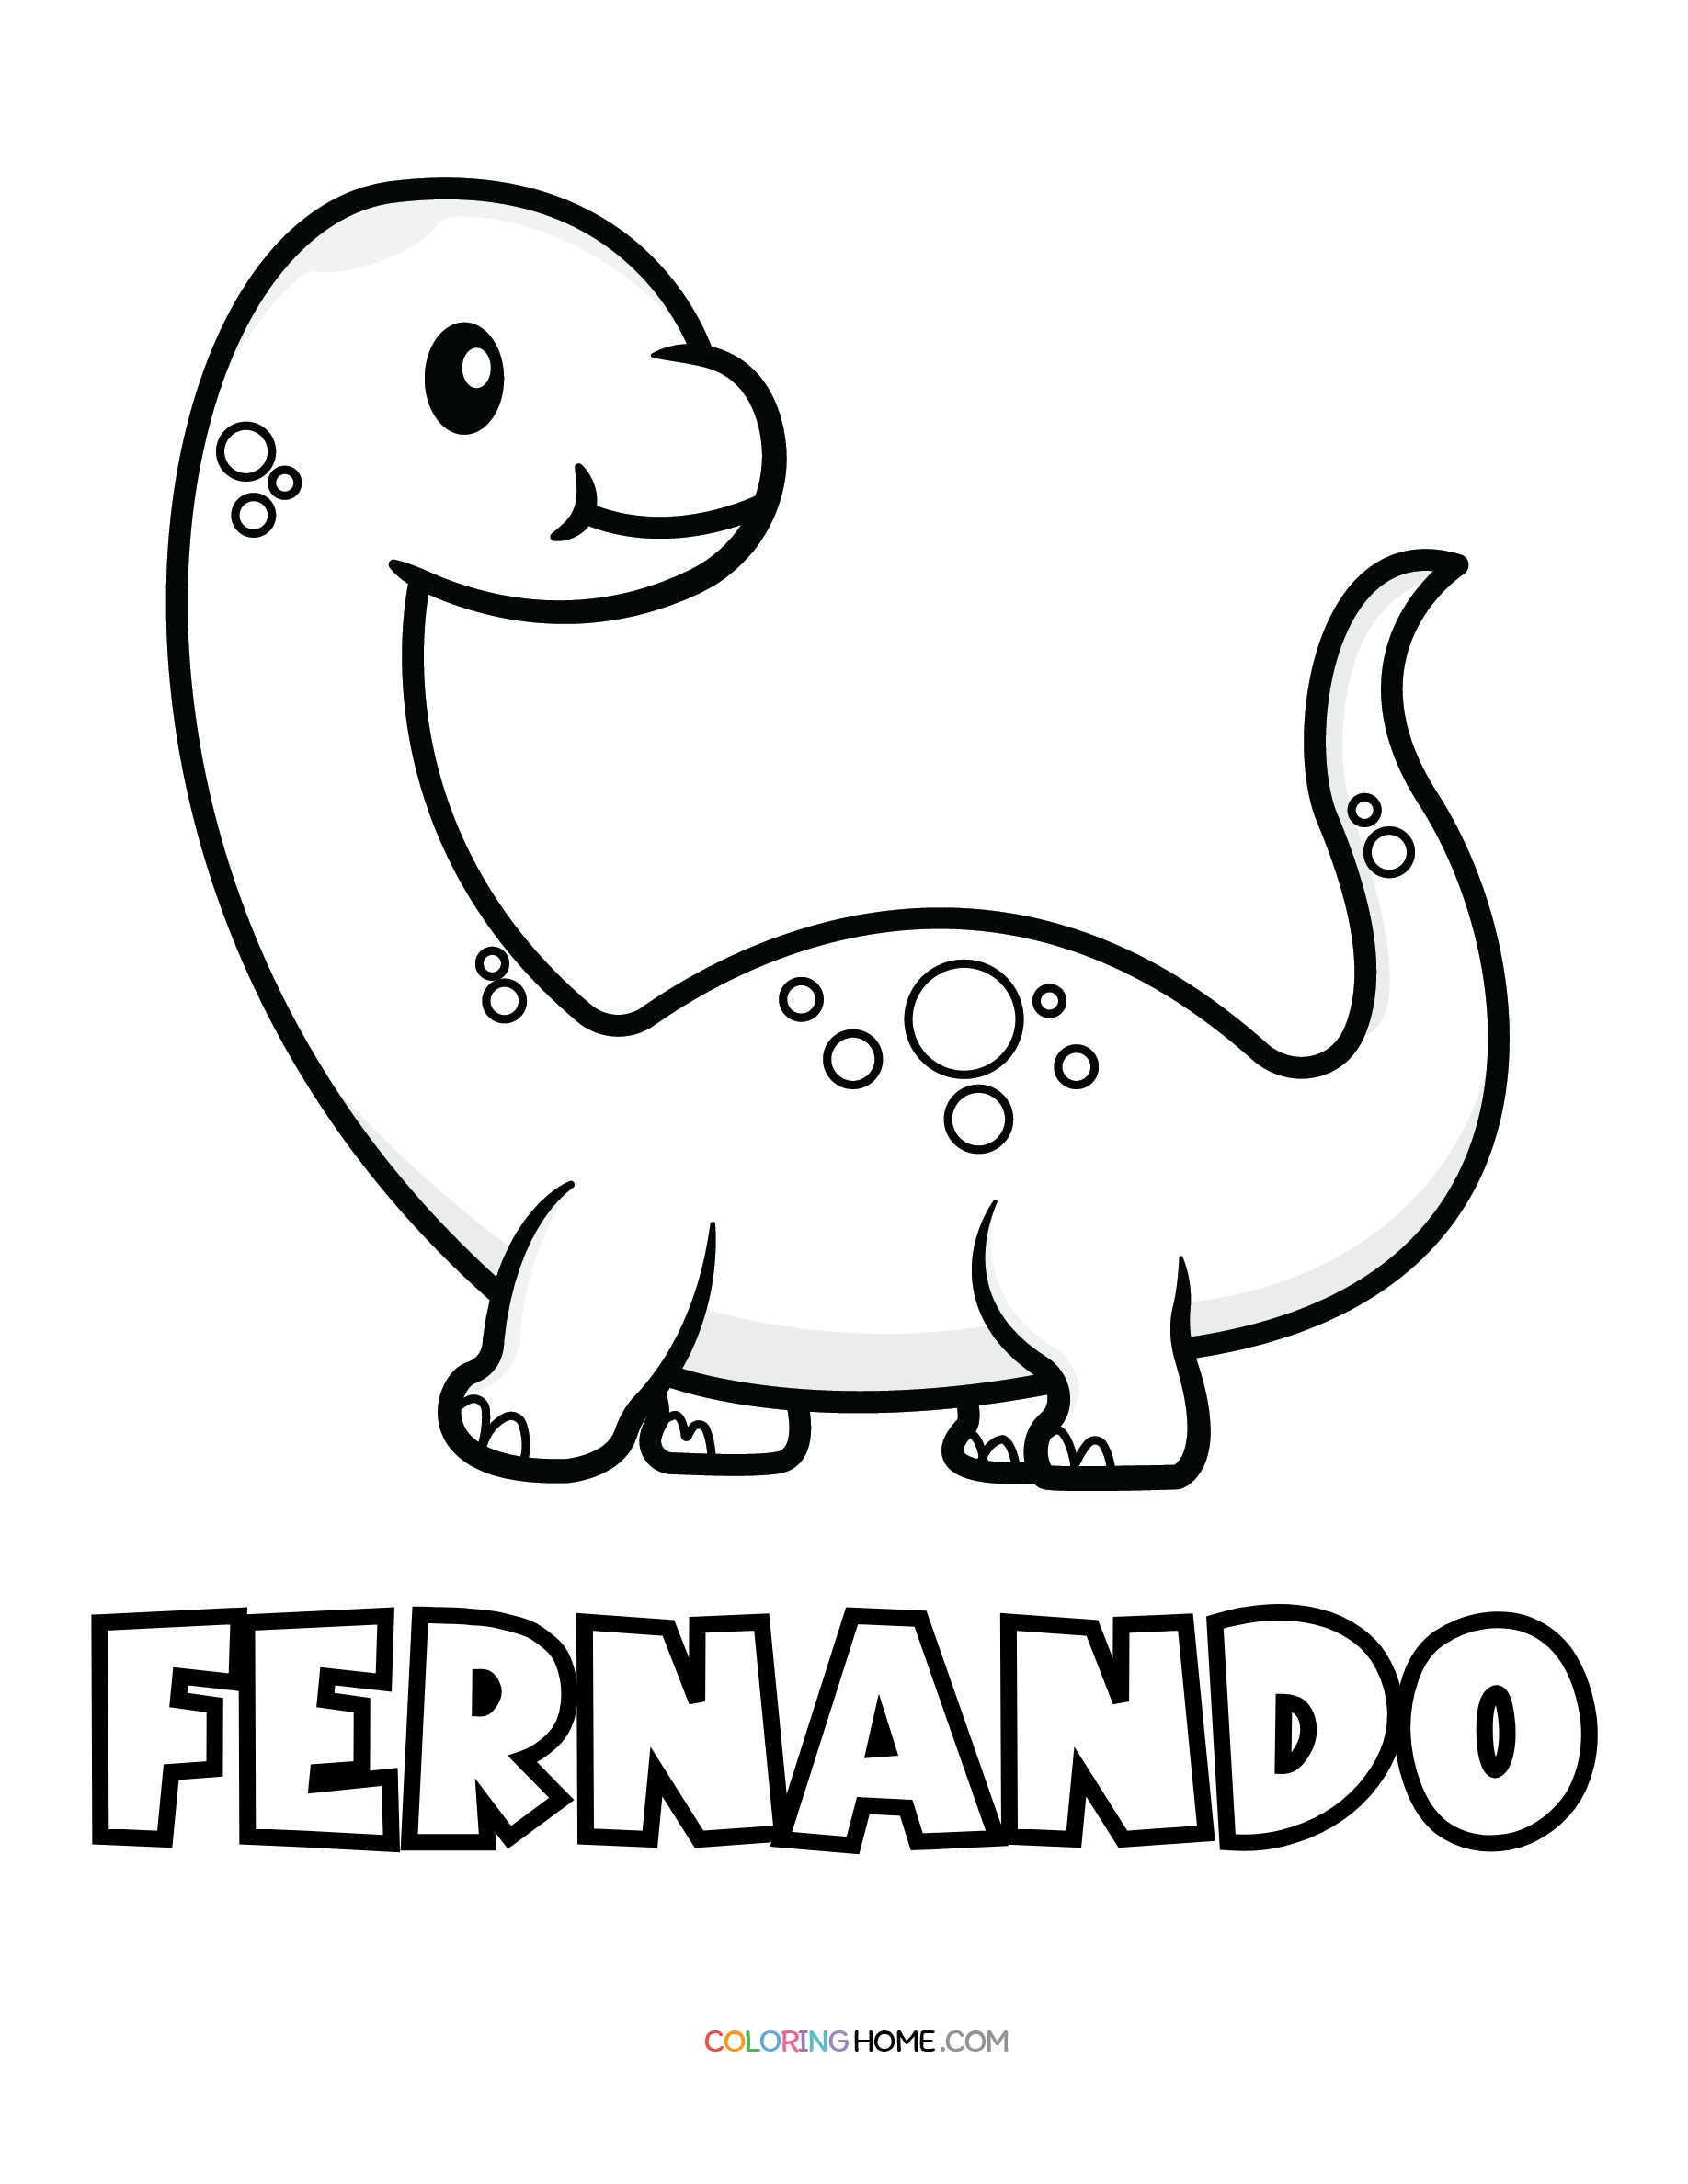 Fernando dinosaur coloring page